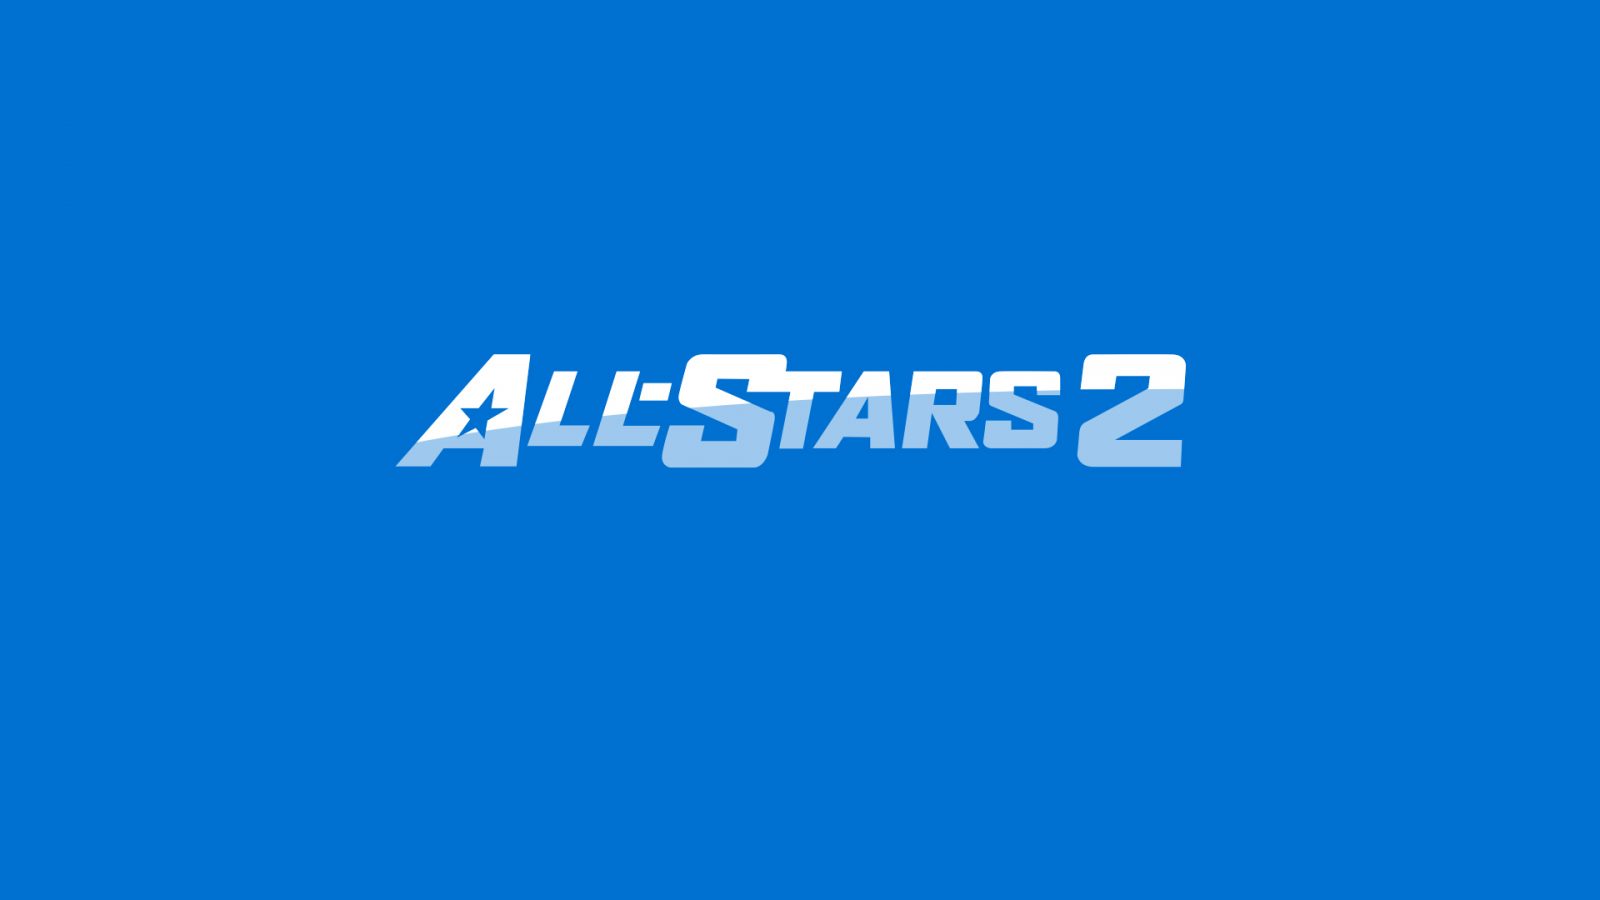 PlayStation All-stars 2 Logo